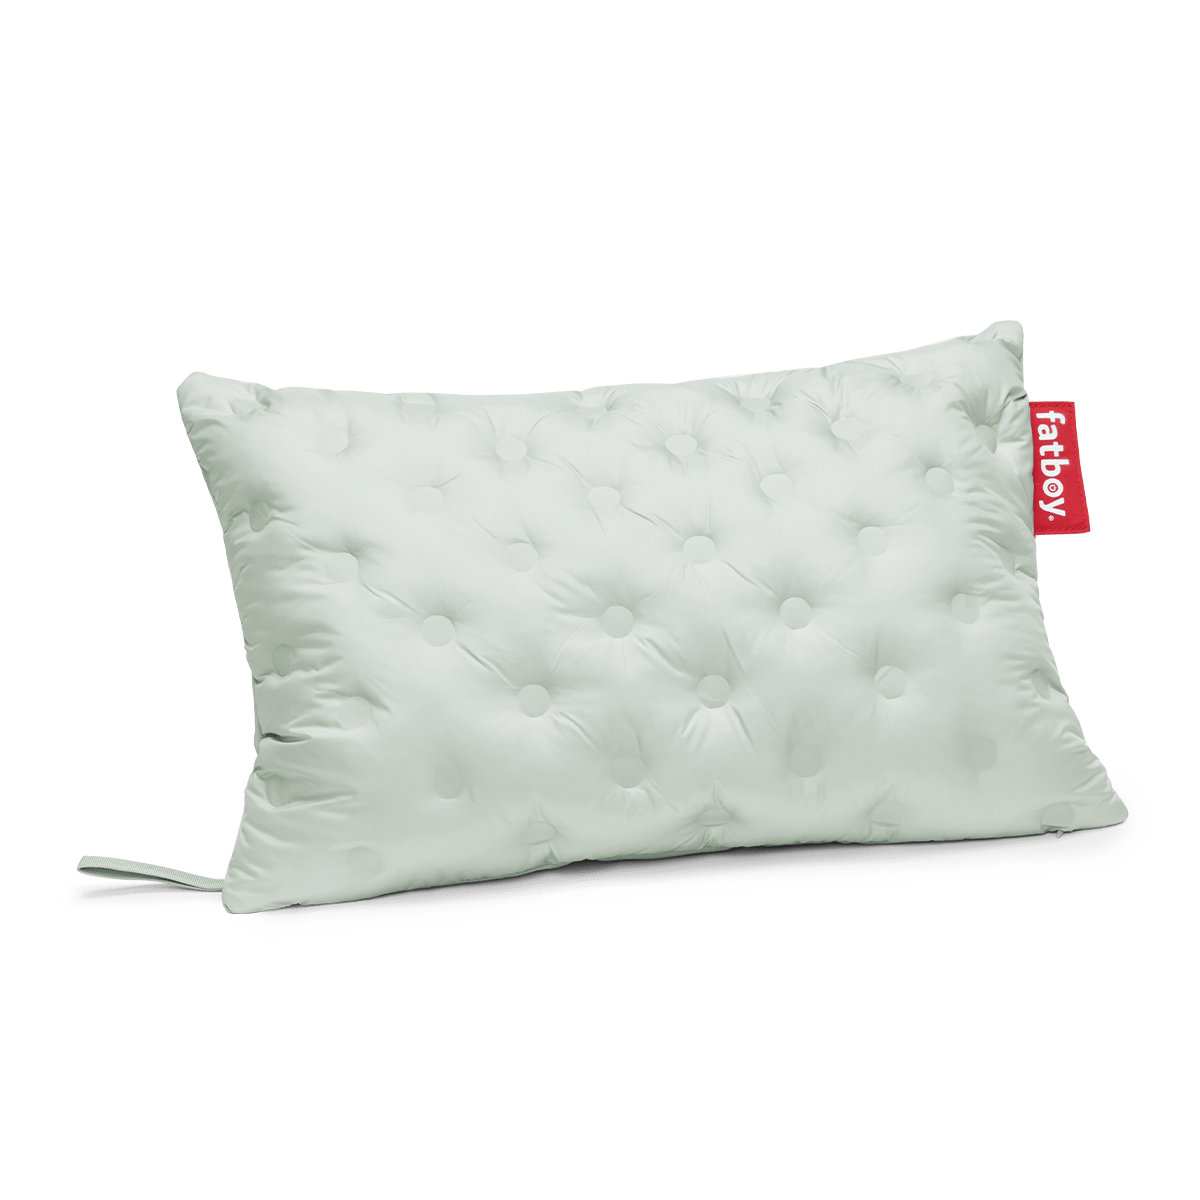 Hotspot: l'elegante cuscino termico rettangolare